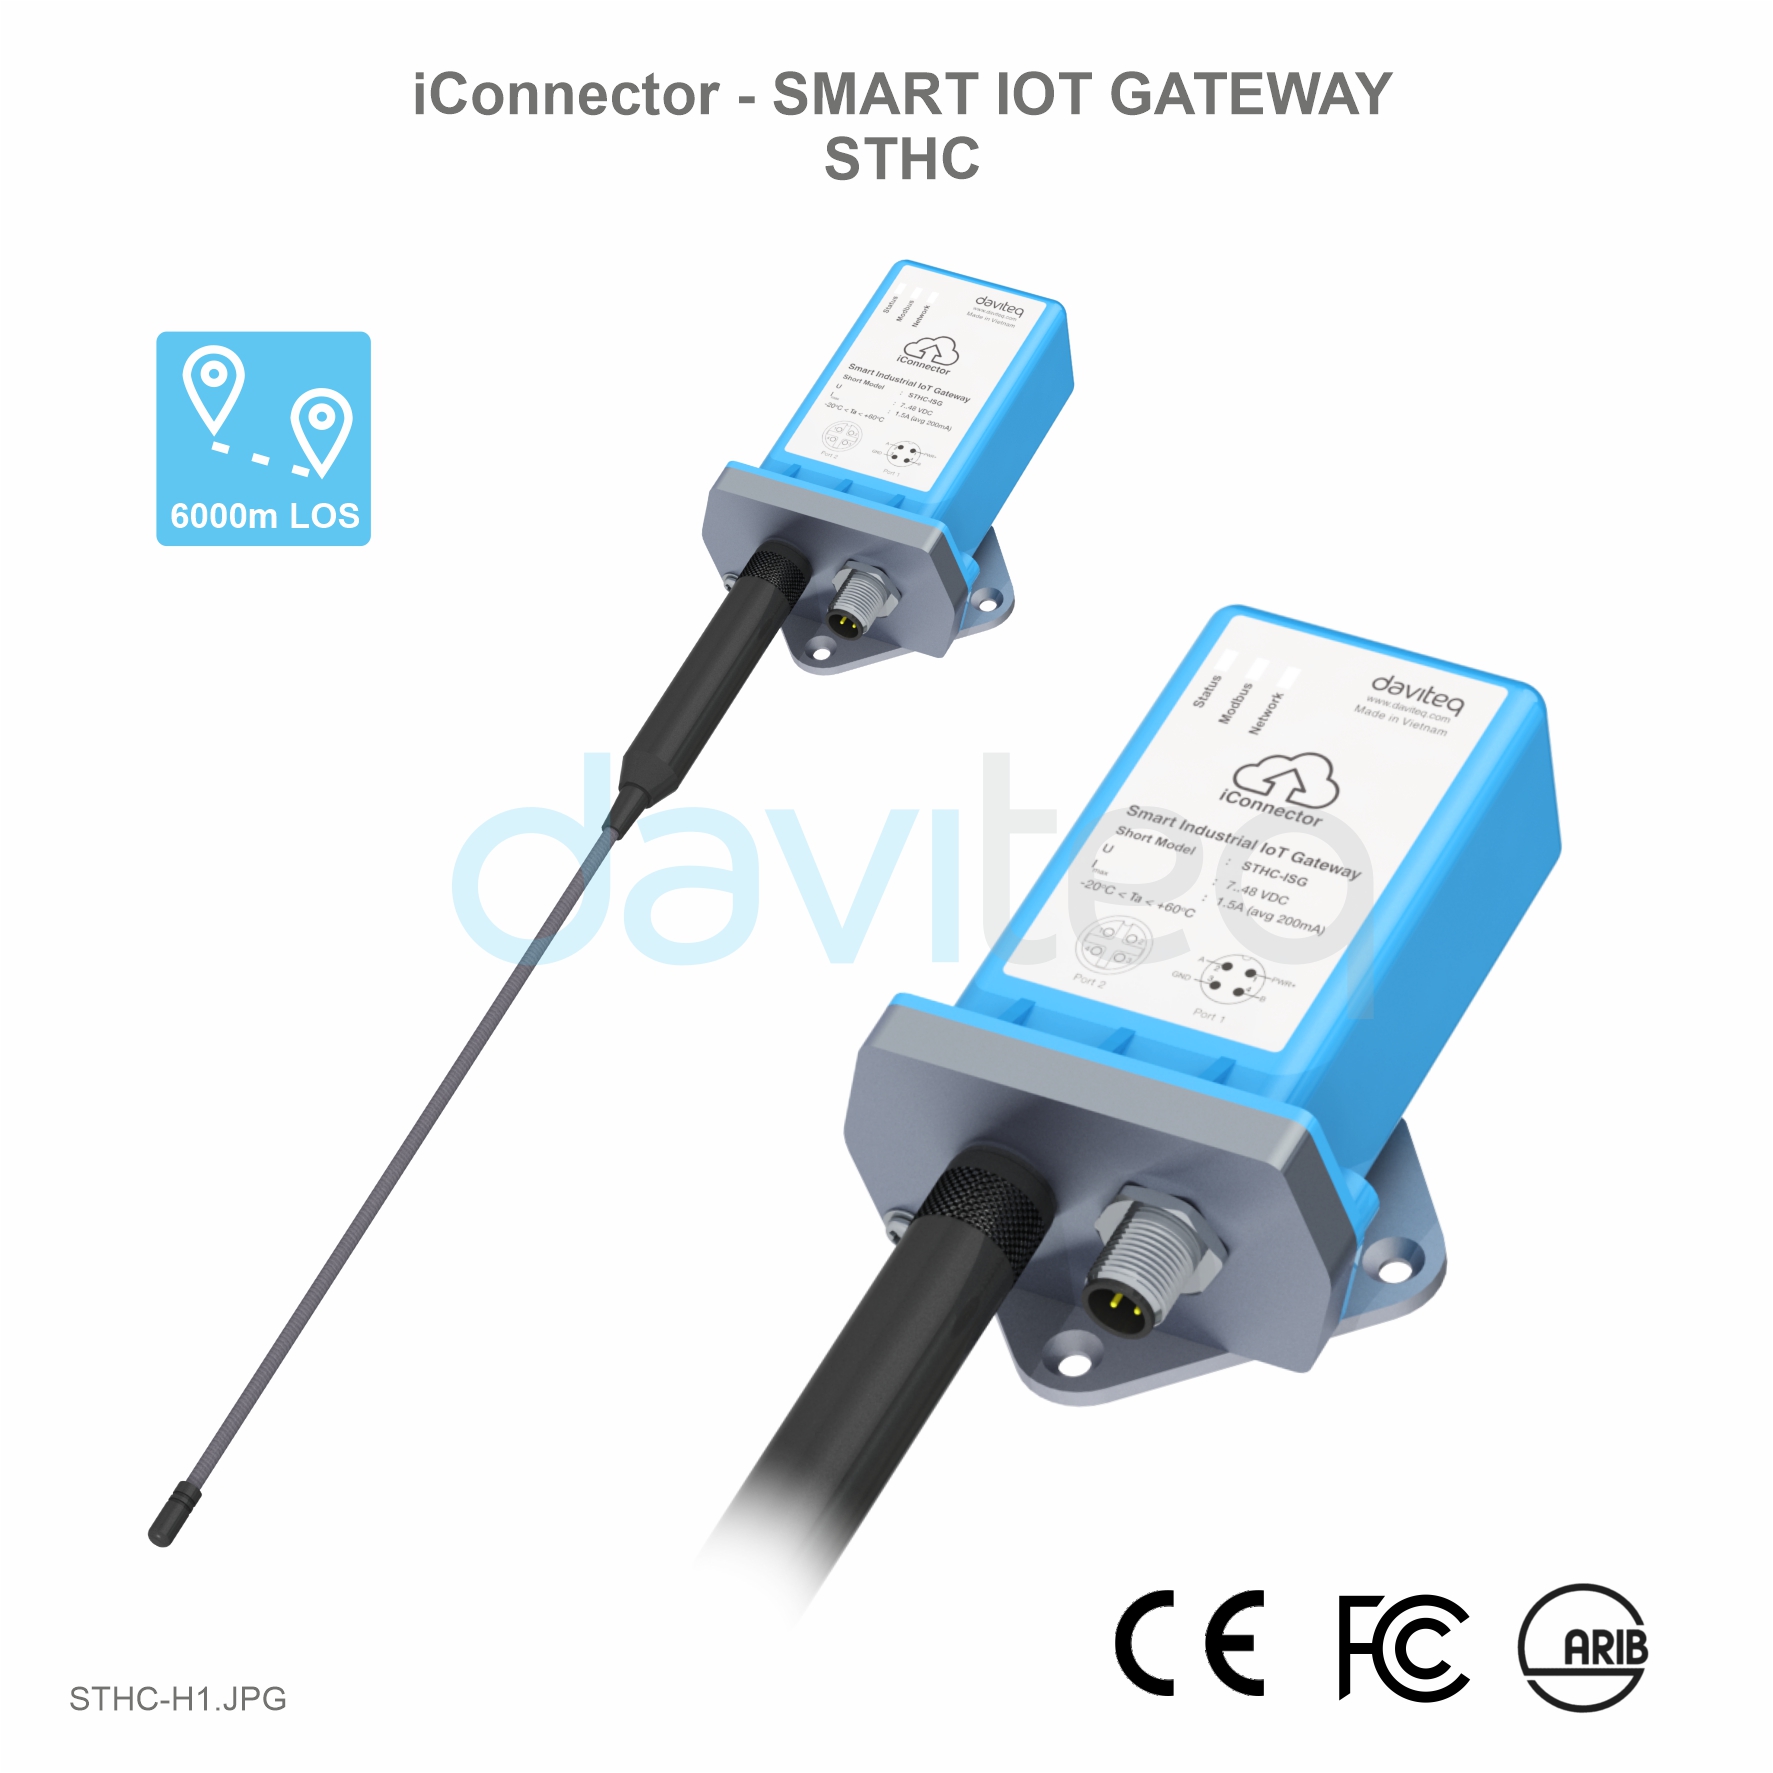 Bộ IoT Gateway thông minh - iConnector